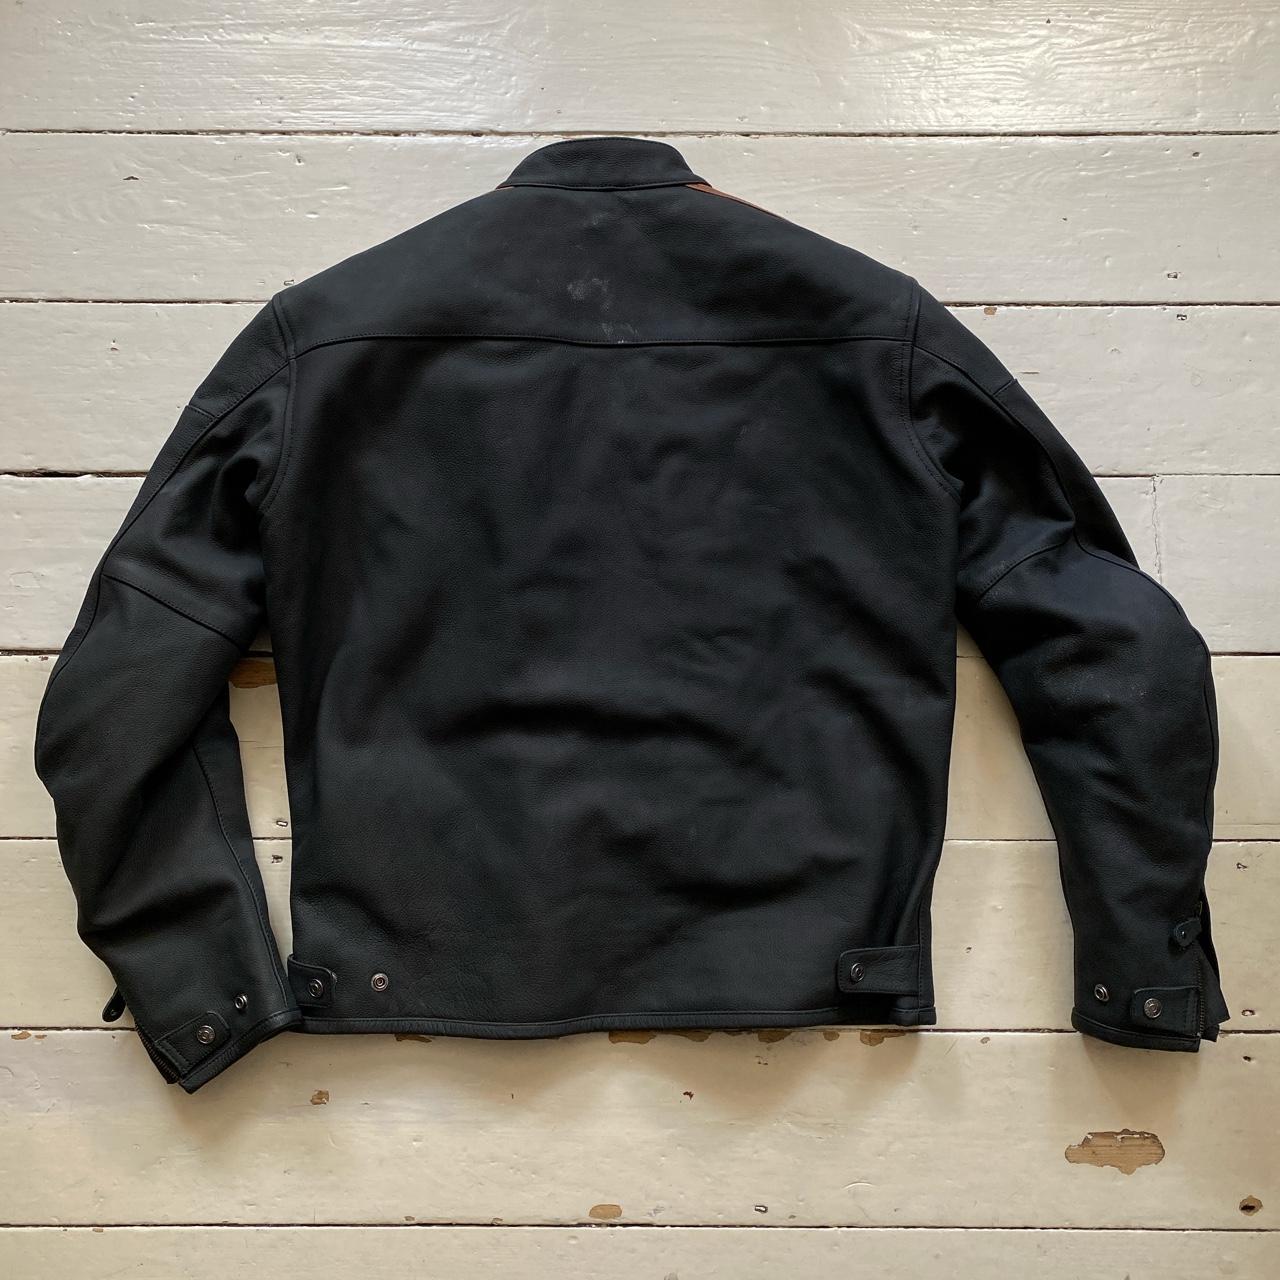 Harley Davidson Vintage Leather Biker Jacket